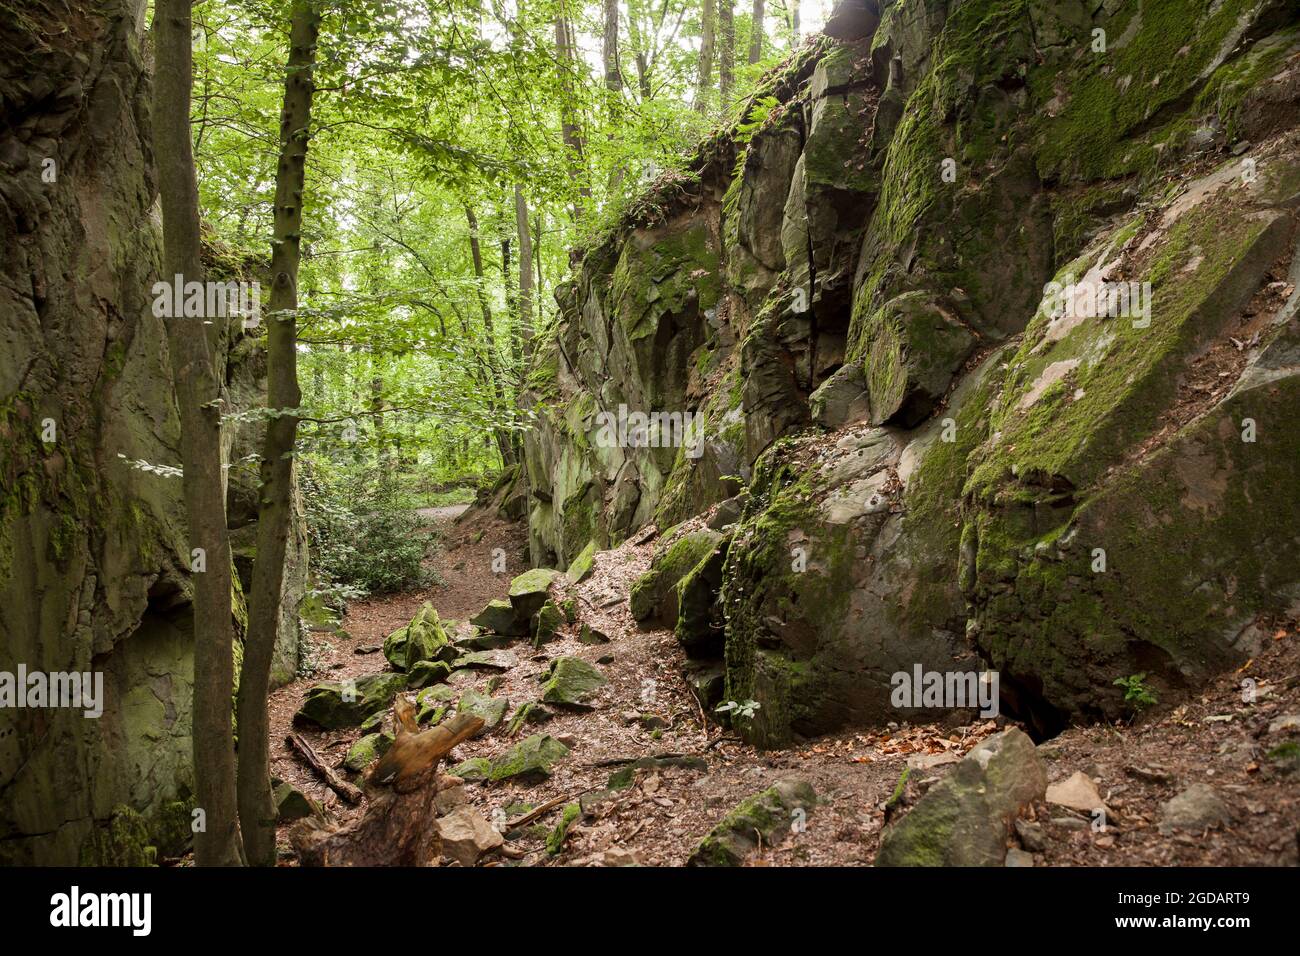 canyon rocheux de la montagne de Stenzelberg dans la chaîne de montagnes de Siebengebirge près de Koenigswinter, la montagne a servi de carrière pour la latite de quartz jusqu'à la Th Banque D'Images